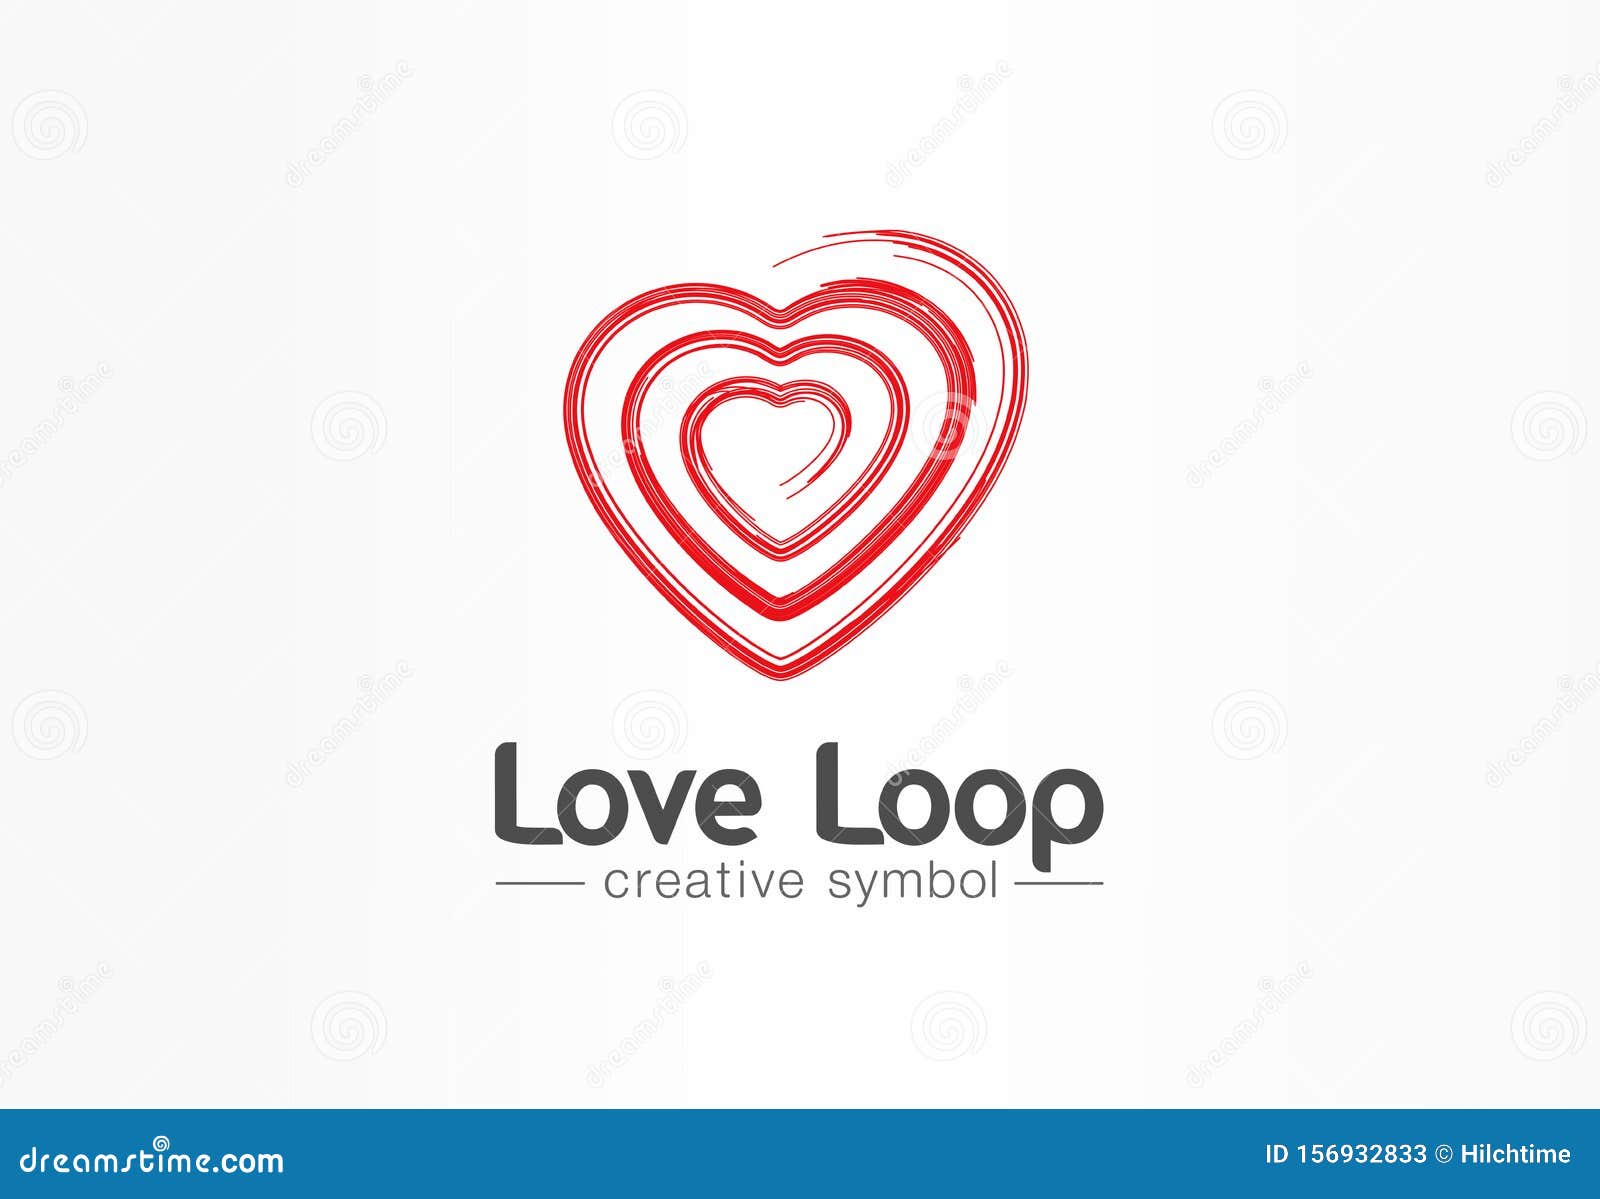 love loops